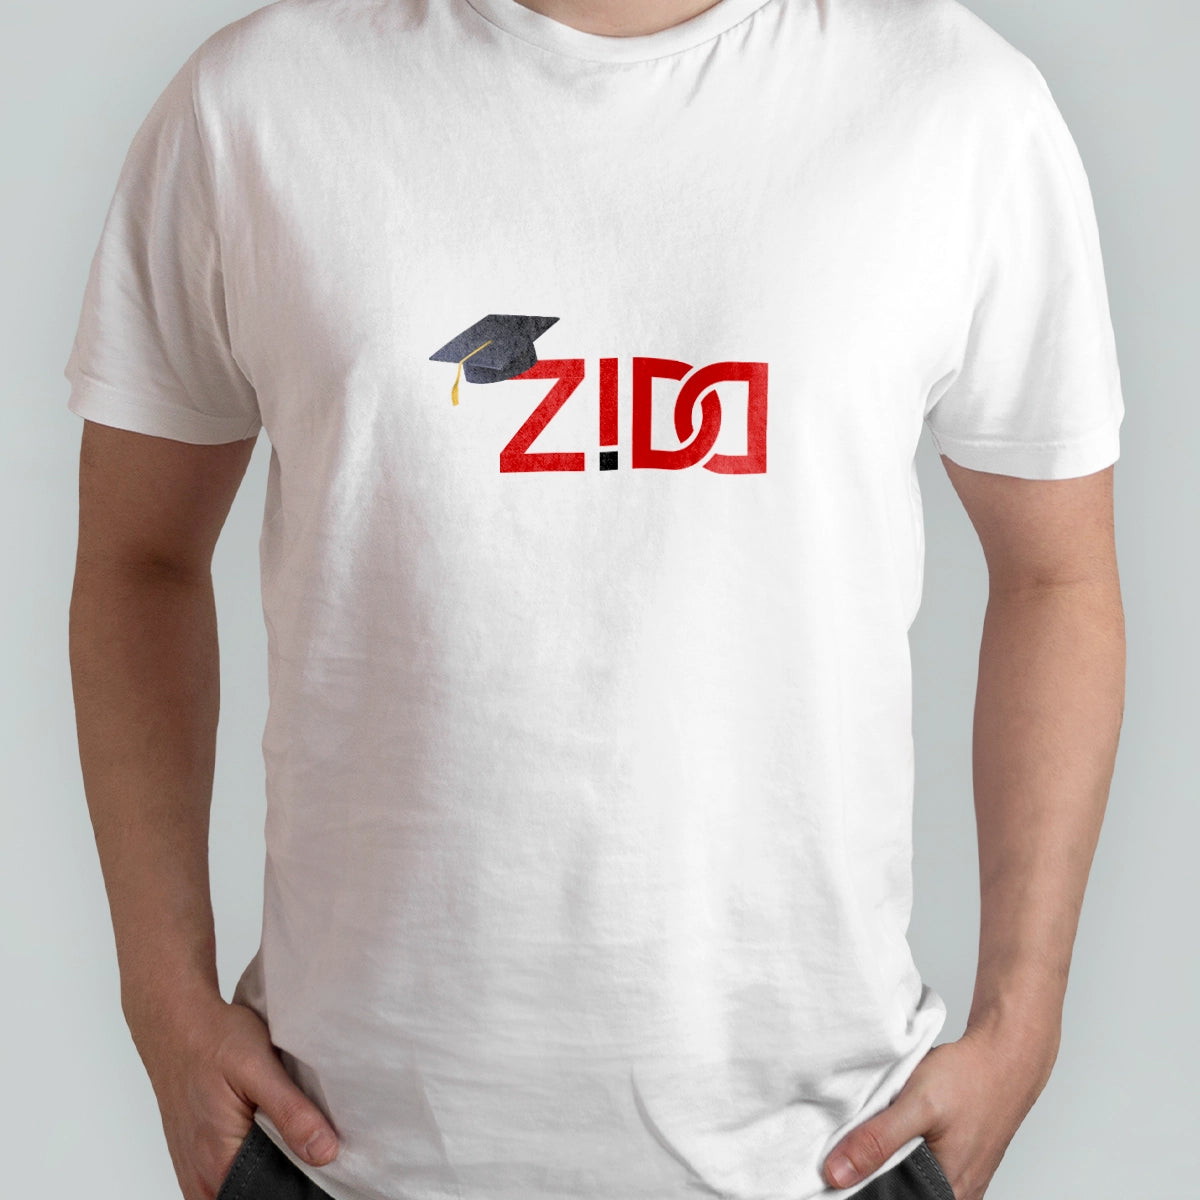 zidd.com